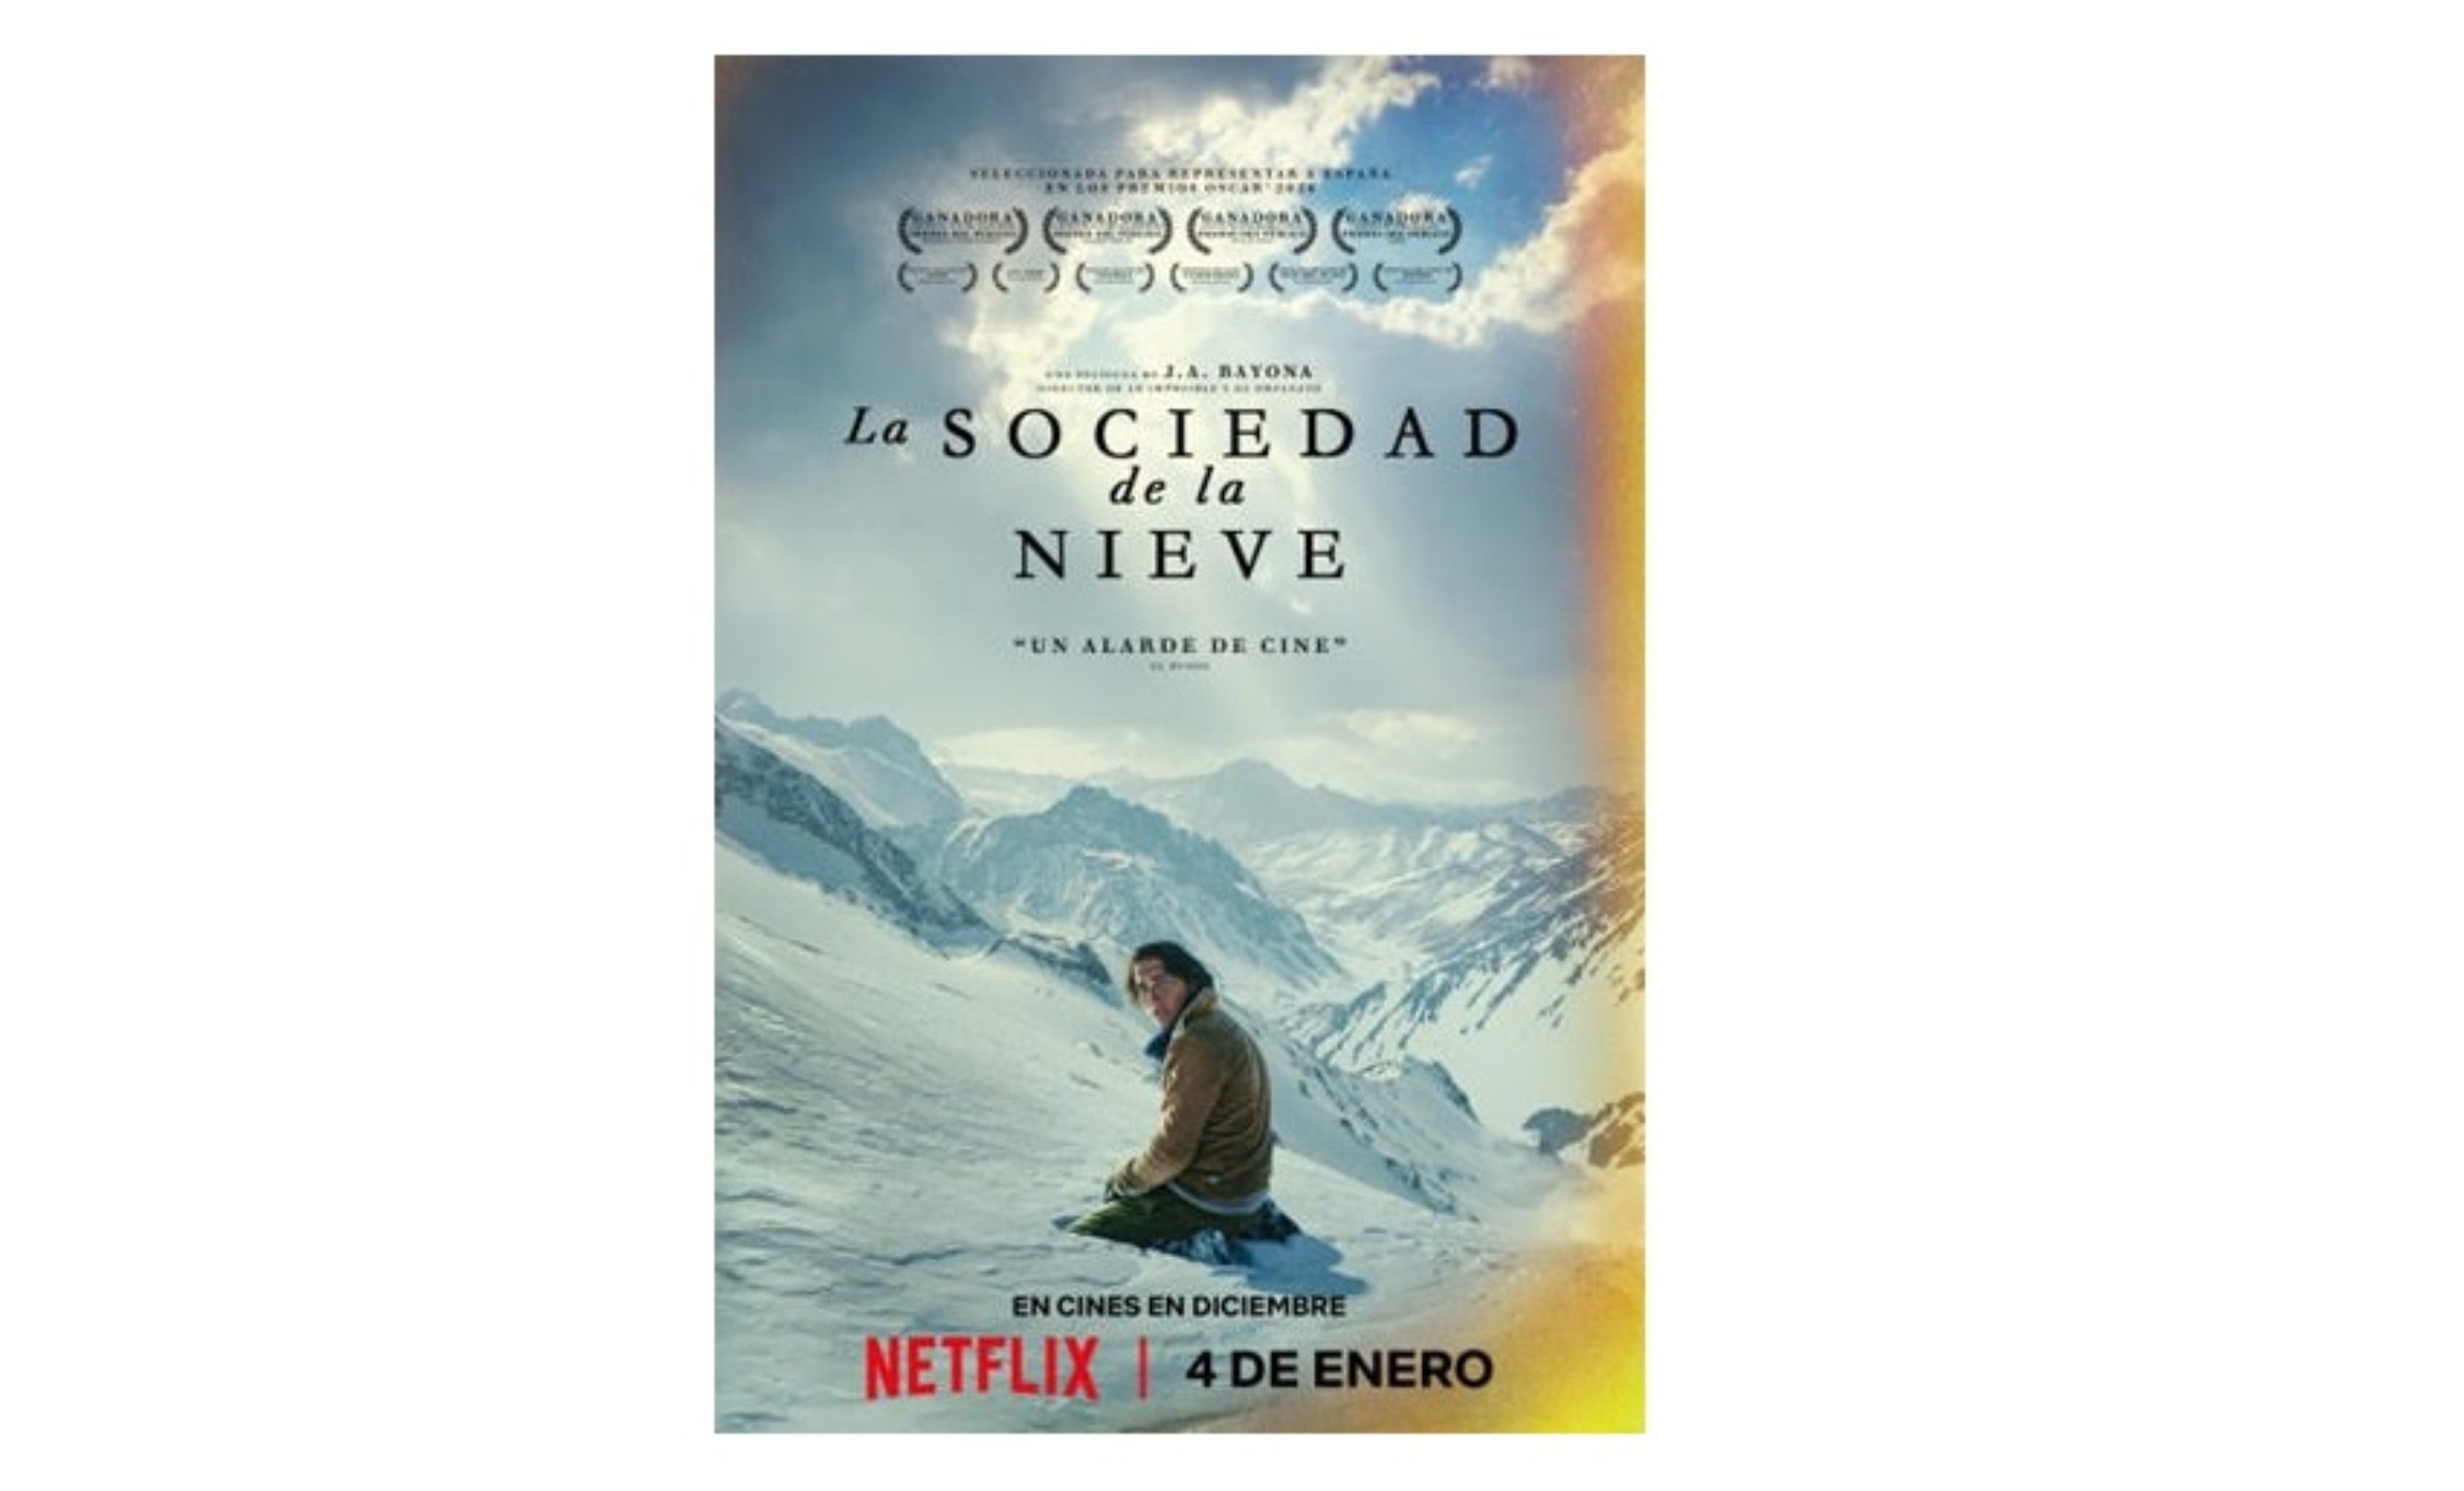 La Sociedad de la Nieve, éxito récord en Netflix como la película